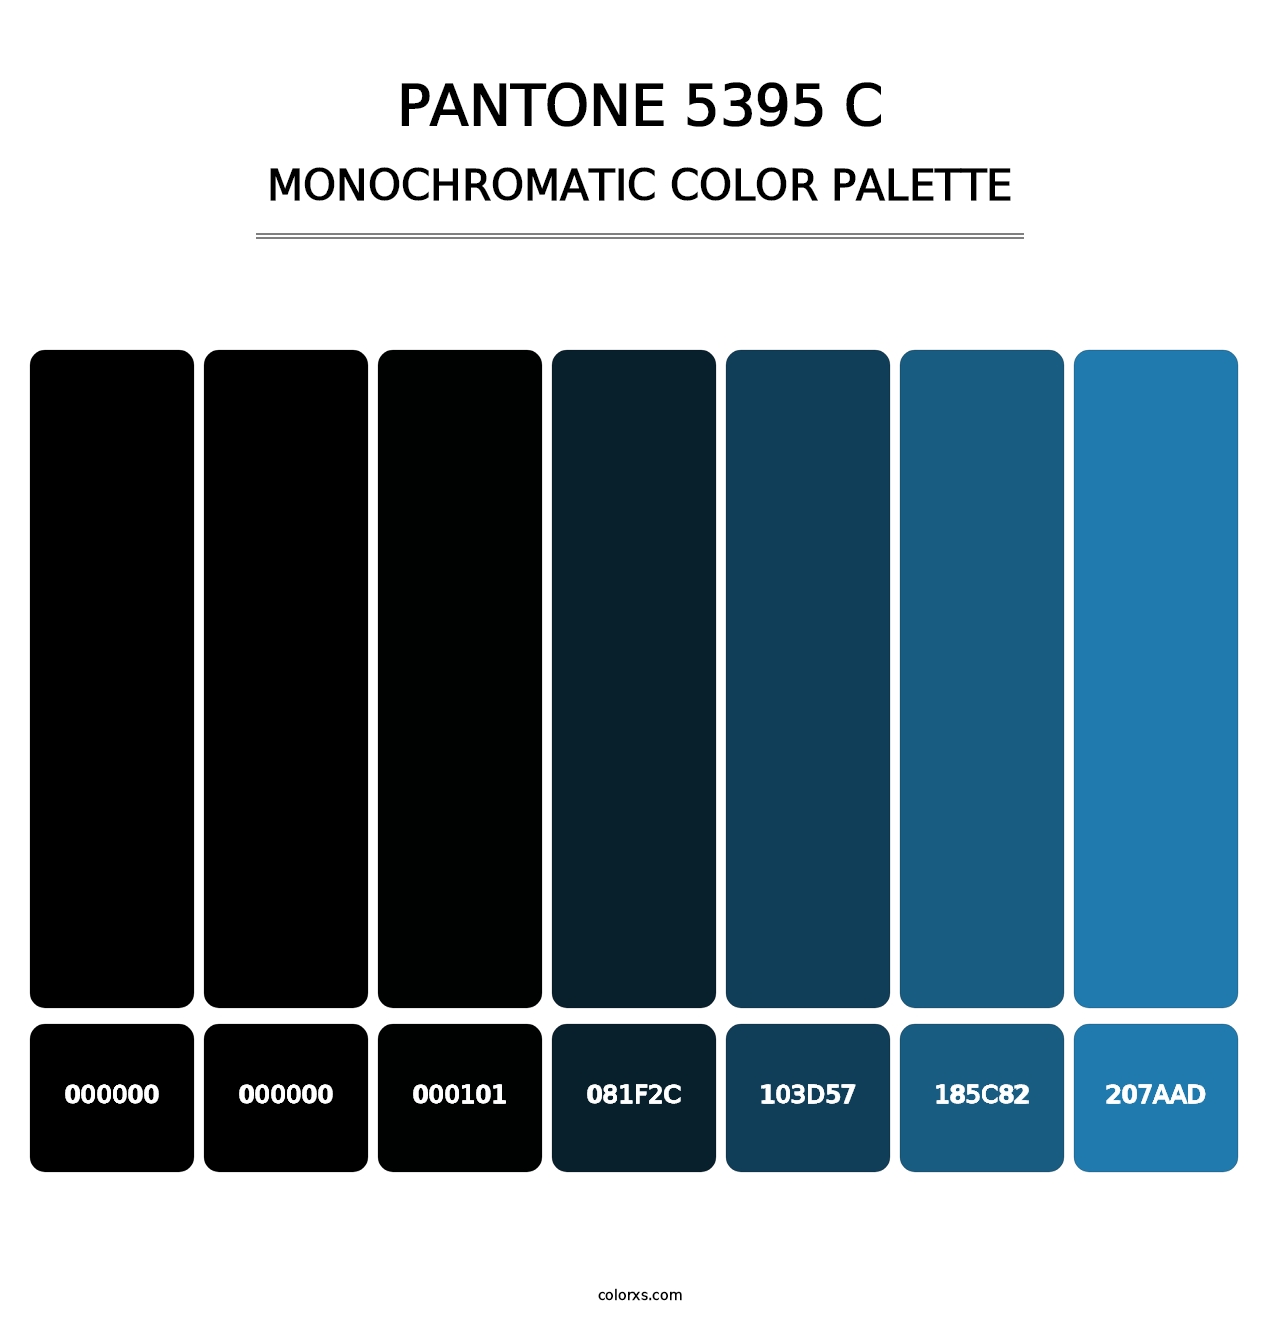 PANTONE 5395 C - Monochromatic Color Palette